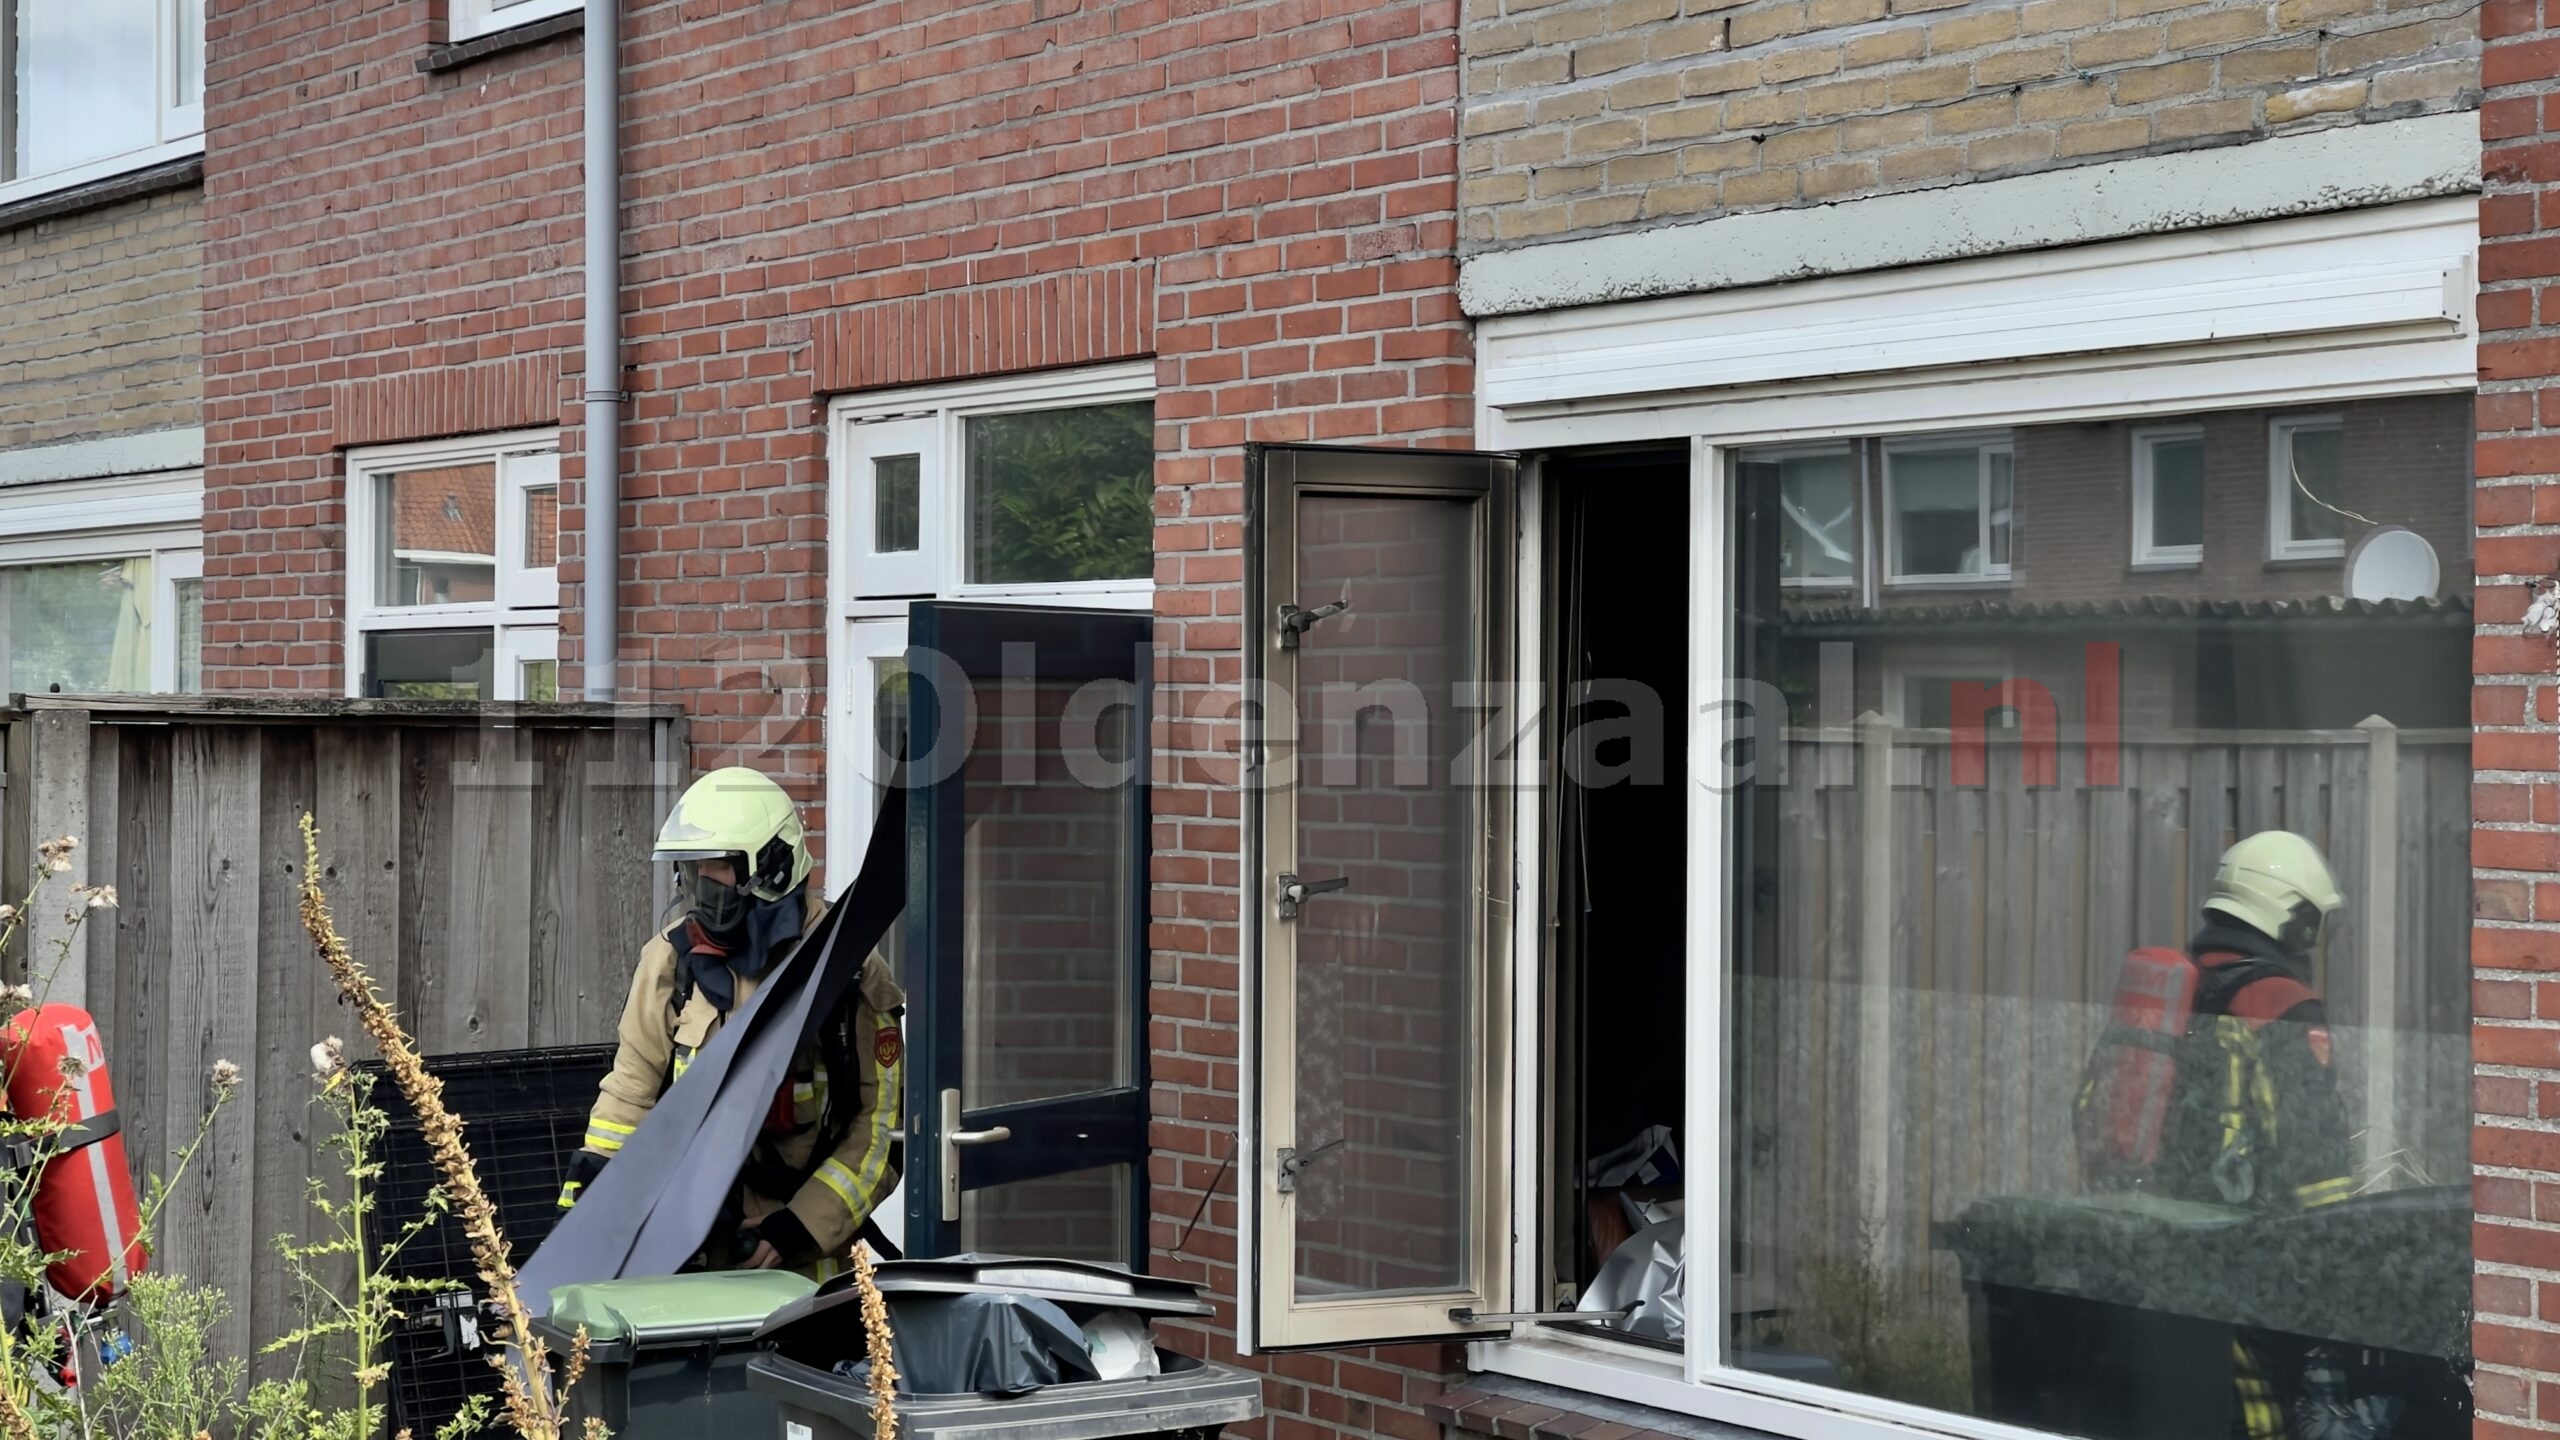 UPDATE: Woning in Oldenzaal zwaar beschadigd na brand; politie en brandweer doen onderzoek